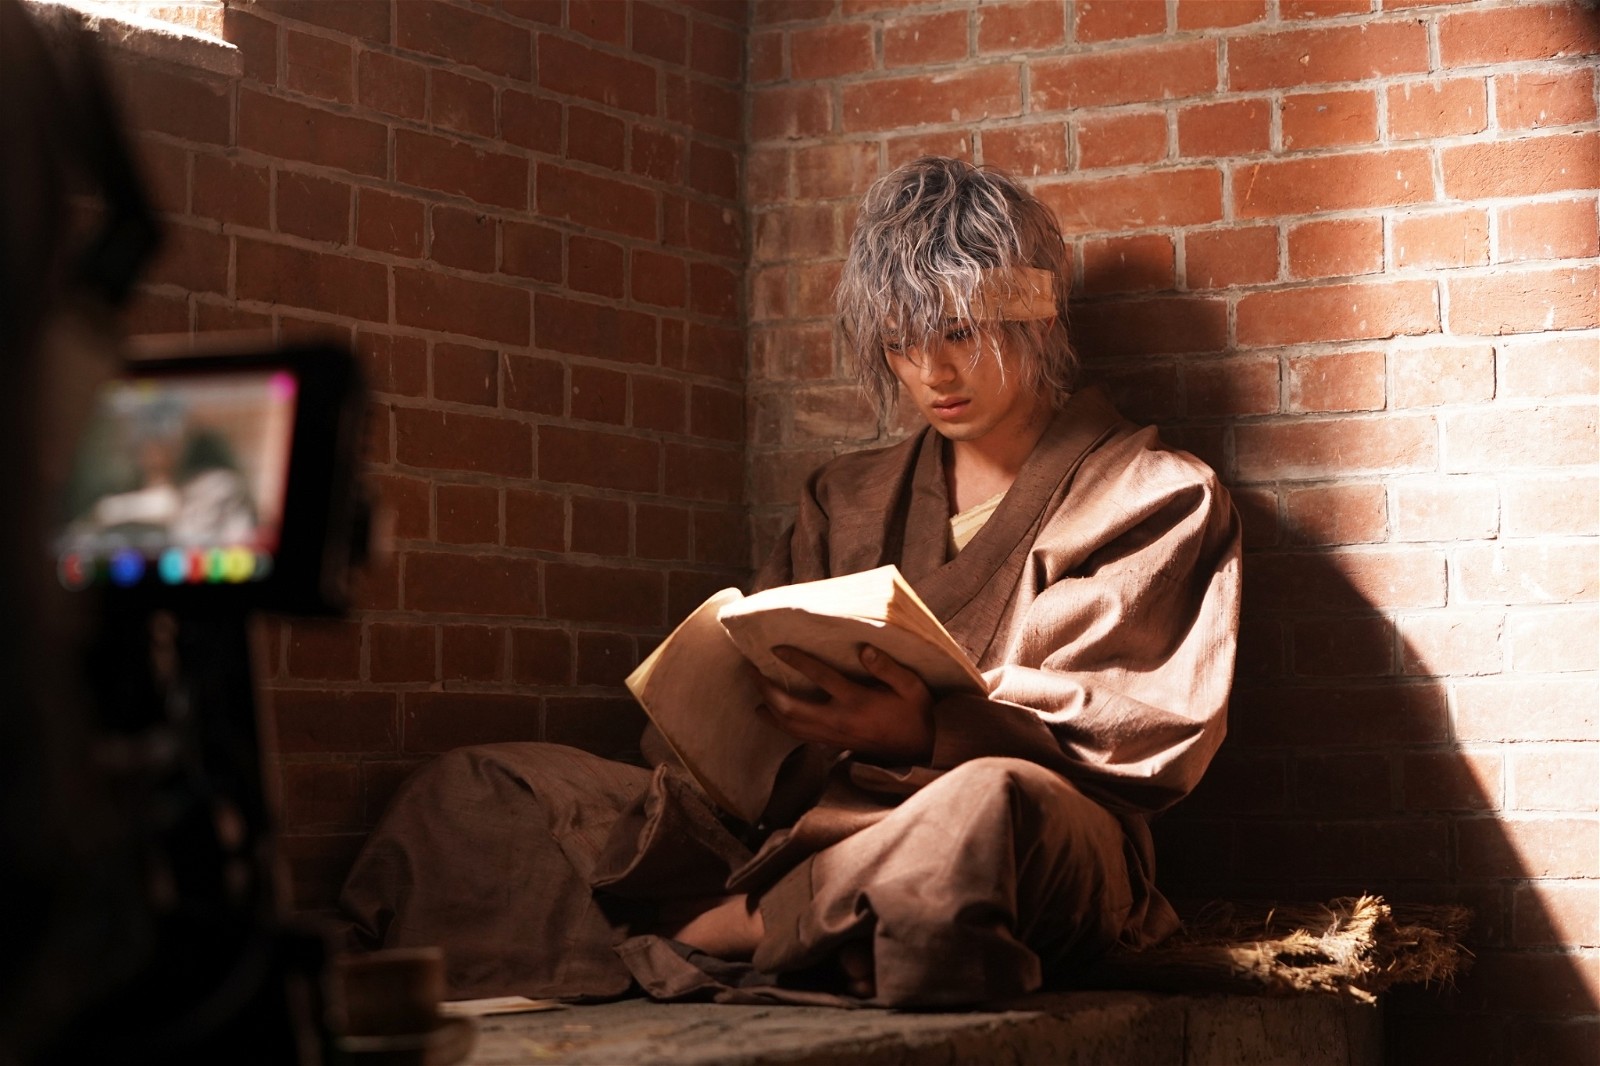 Mackenyu as Yukishiro Enishi in Rurouni Kenshin: The Final